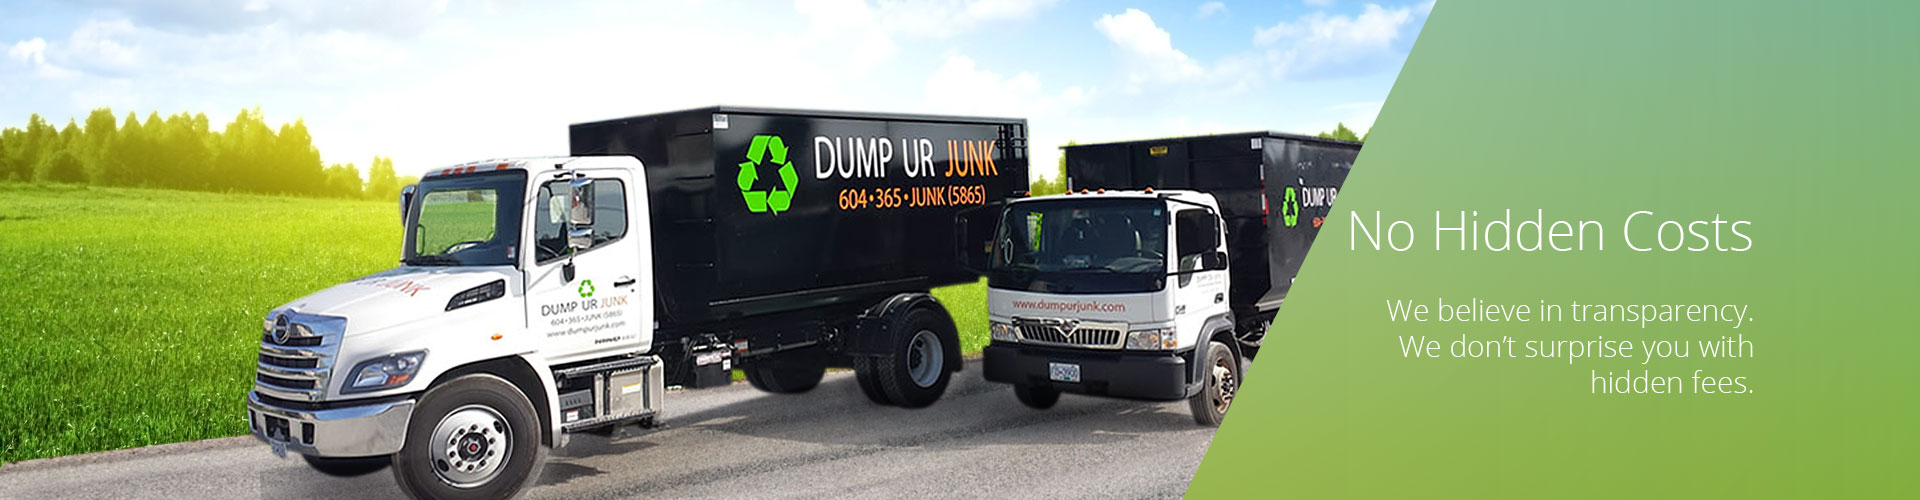 Dump Ur Junk - No Hidden Costs